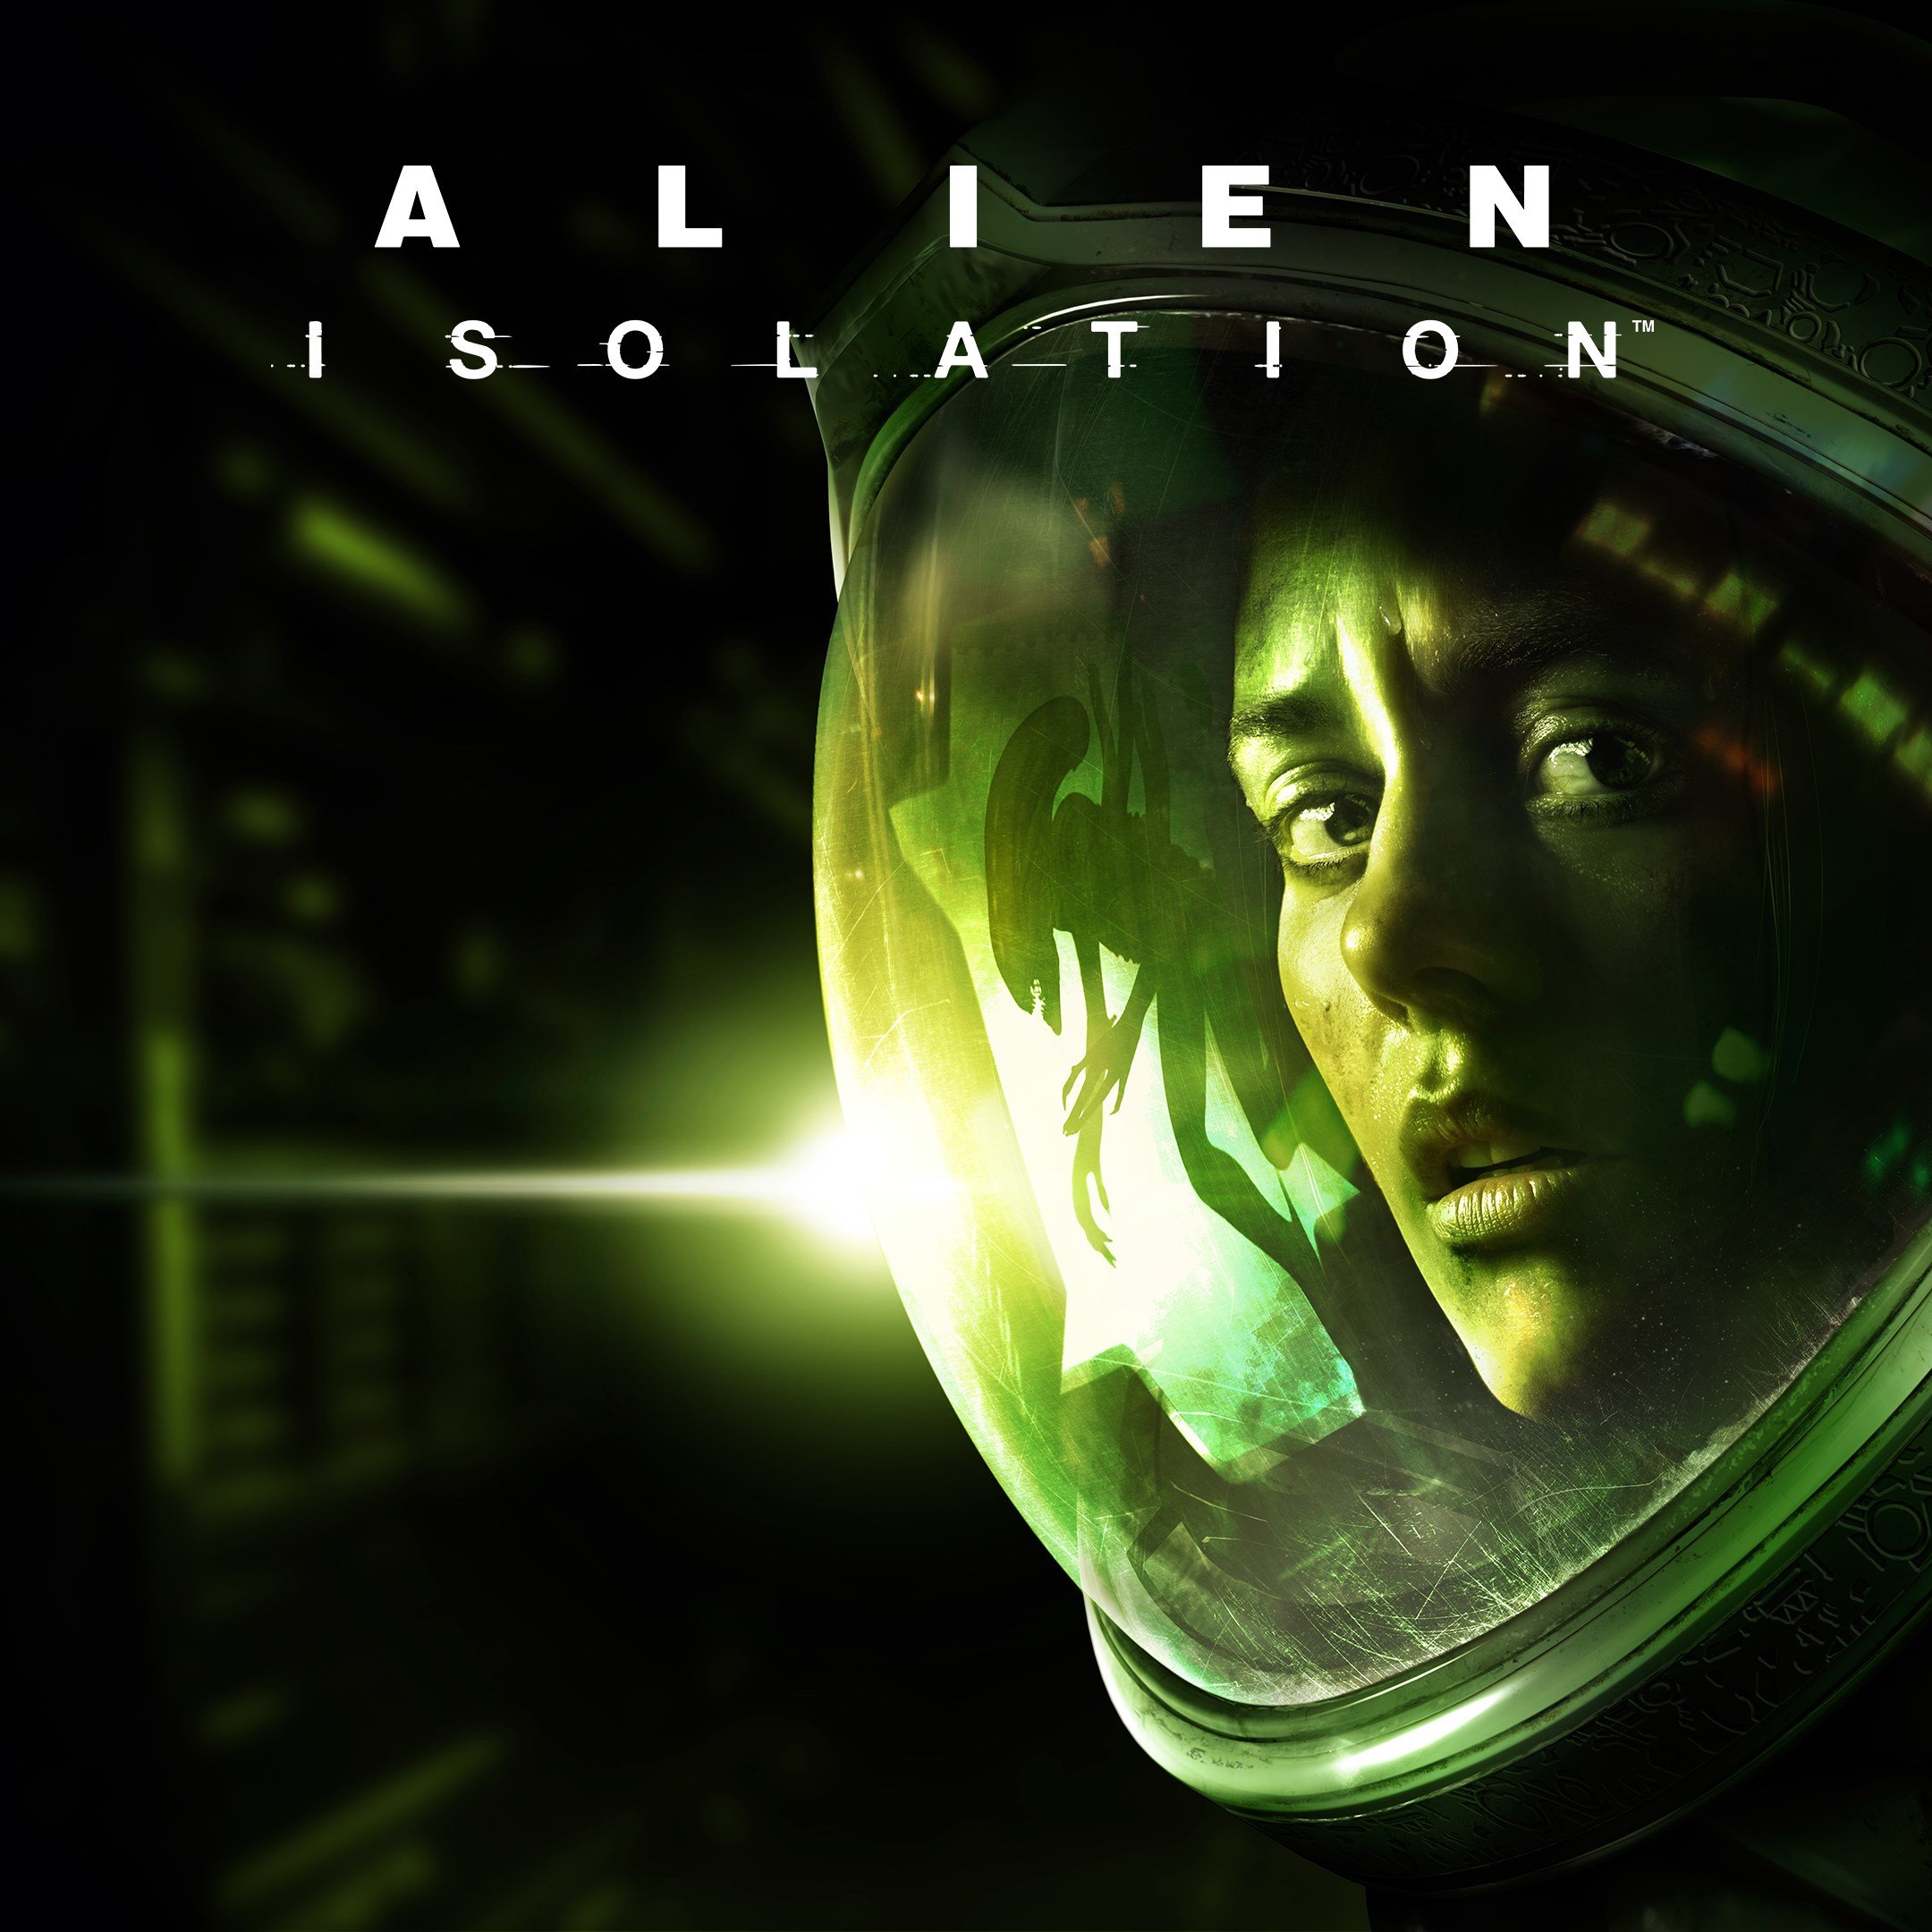 Boxart for Alien: Isolation